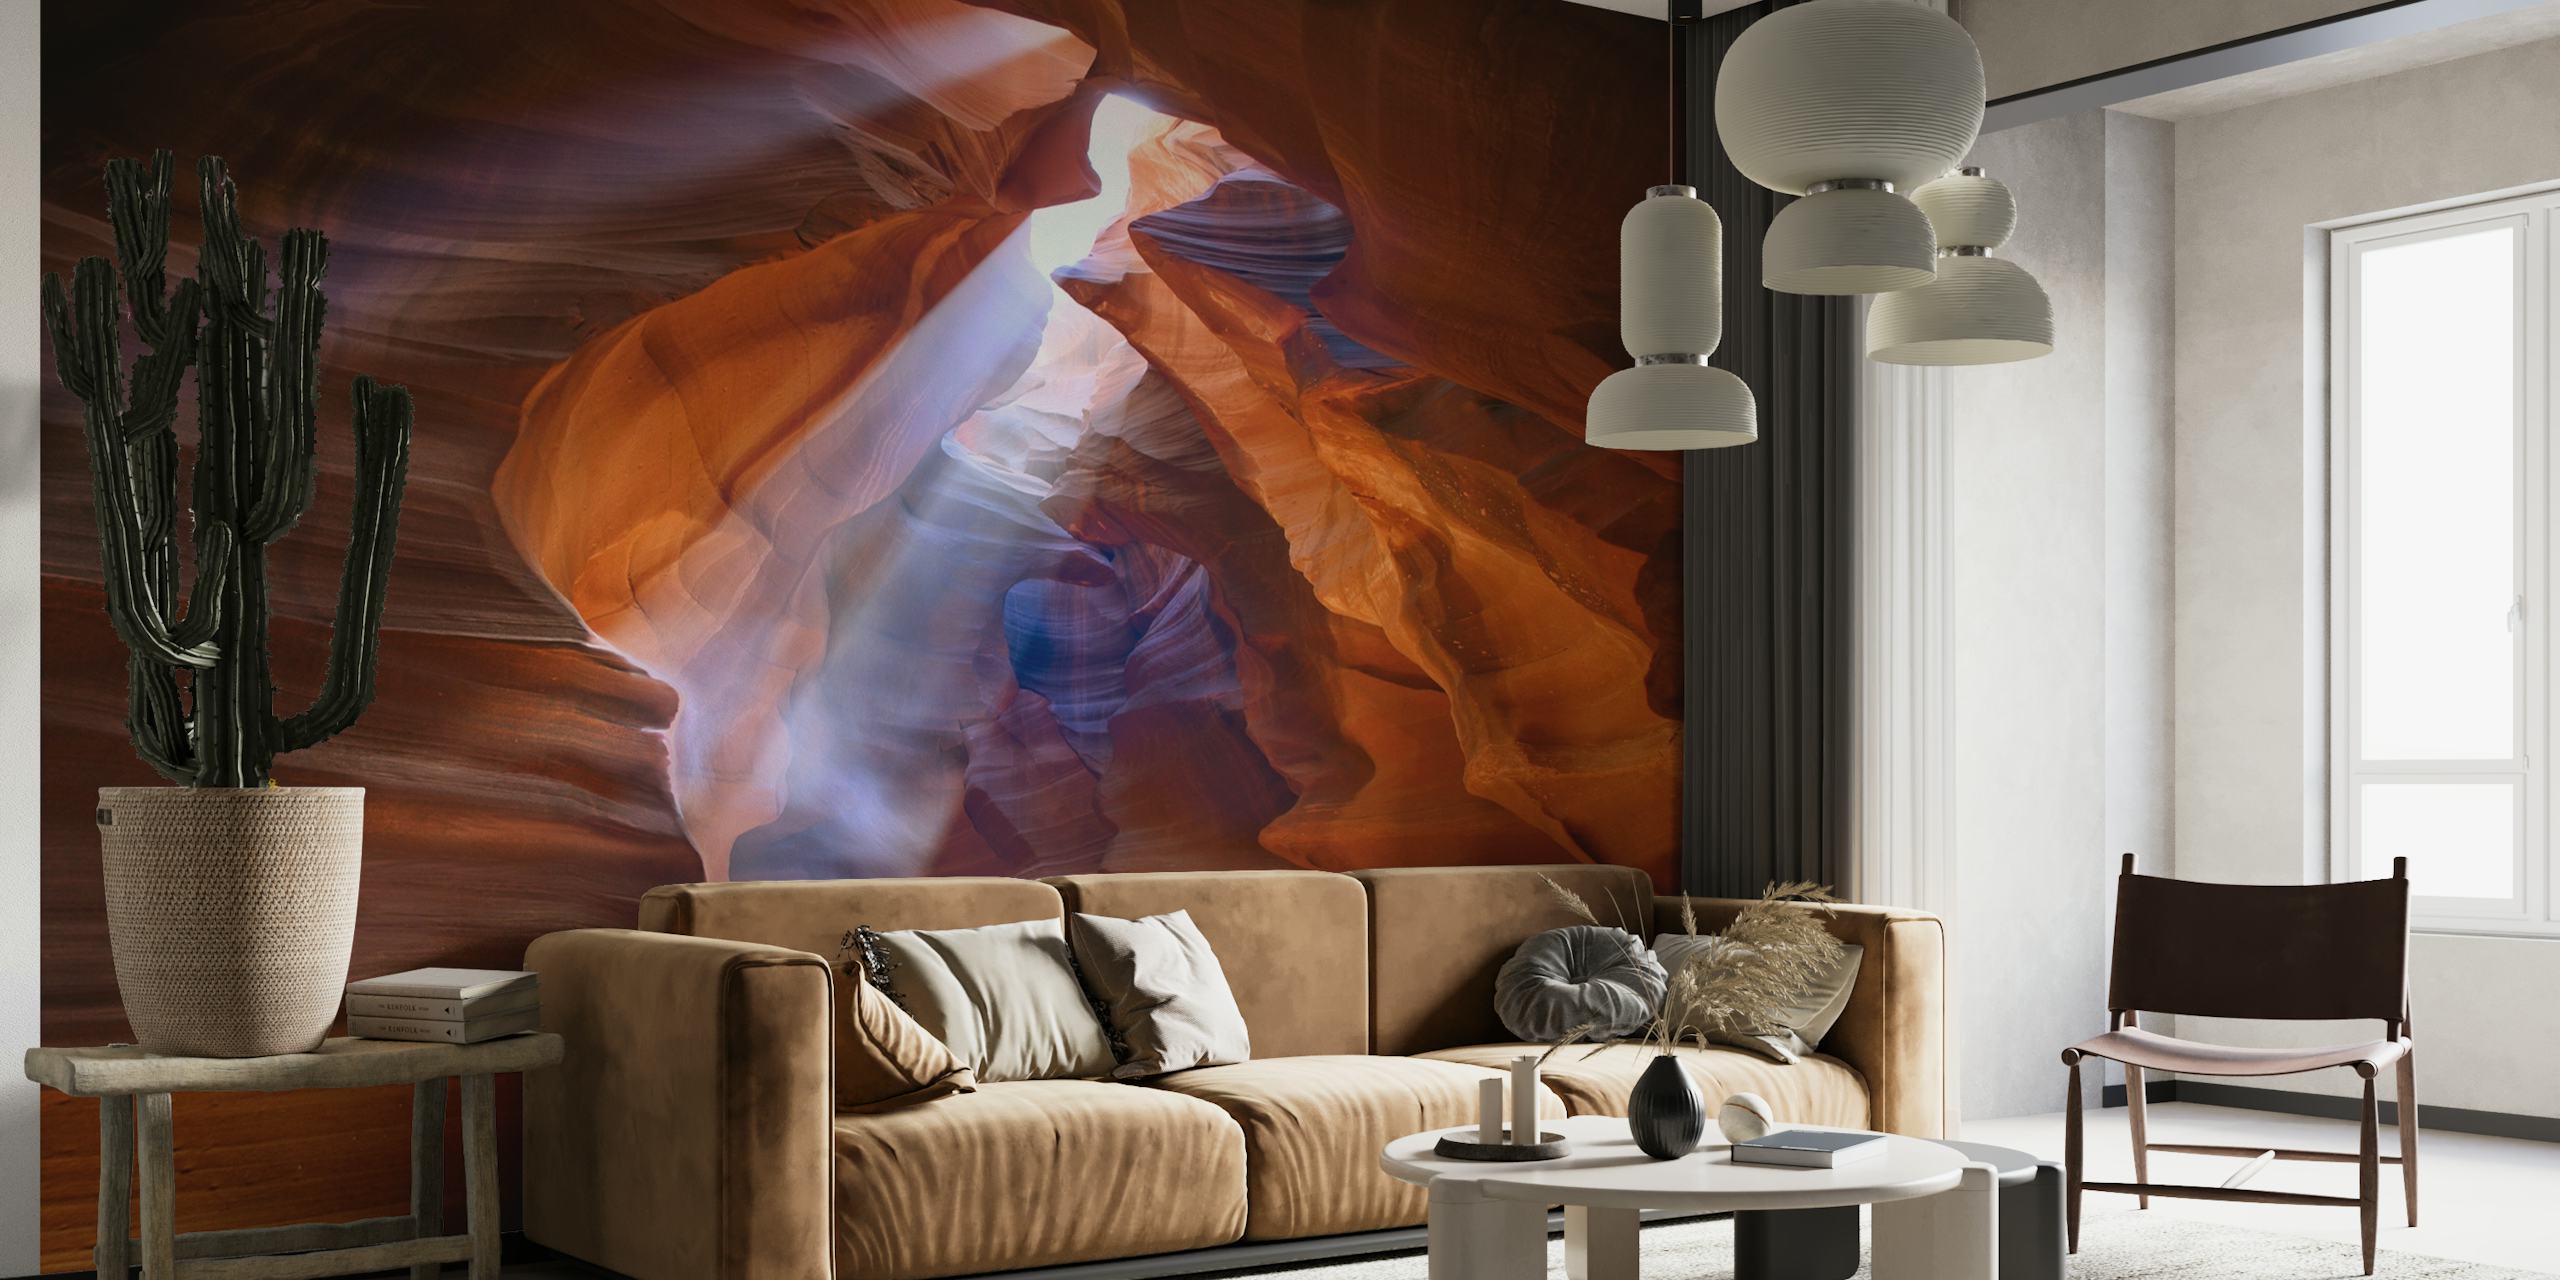 Solbelyst canyon vægmaleri med samspil af lys og skygge i varme jordfarver.